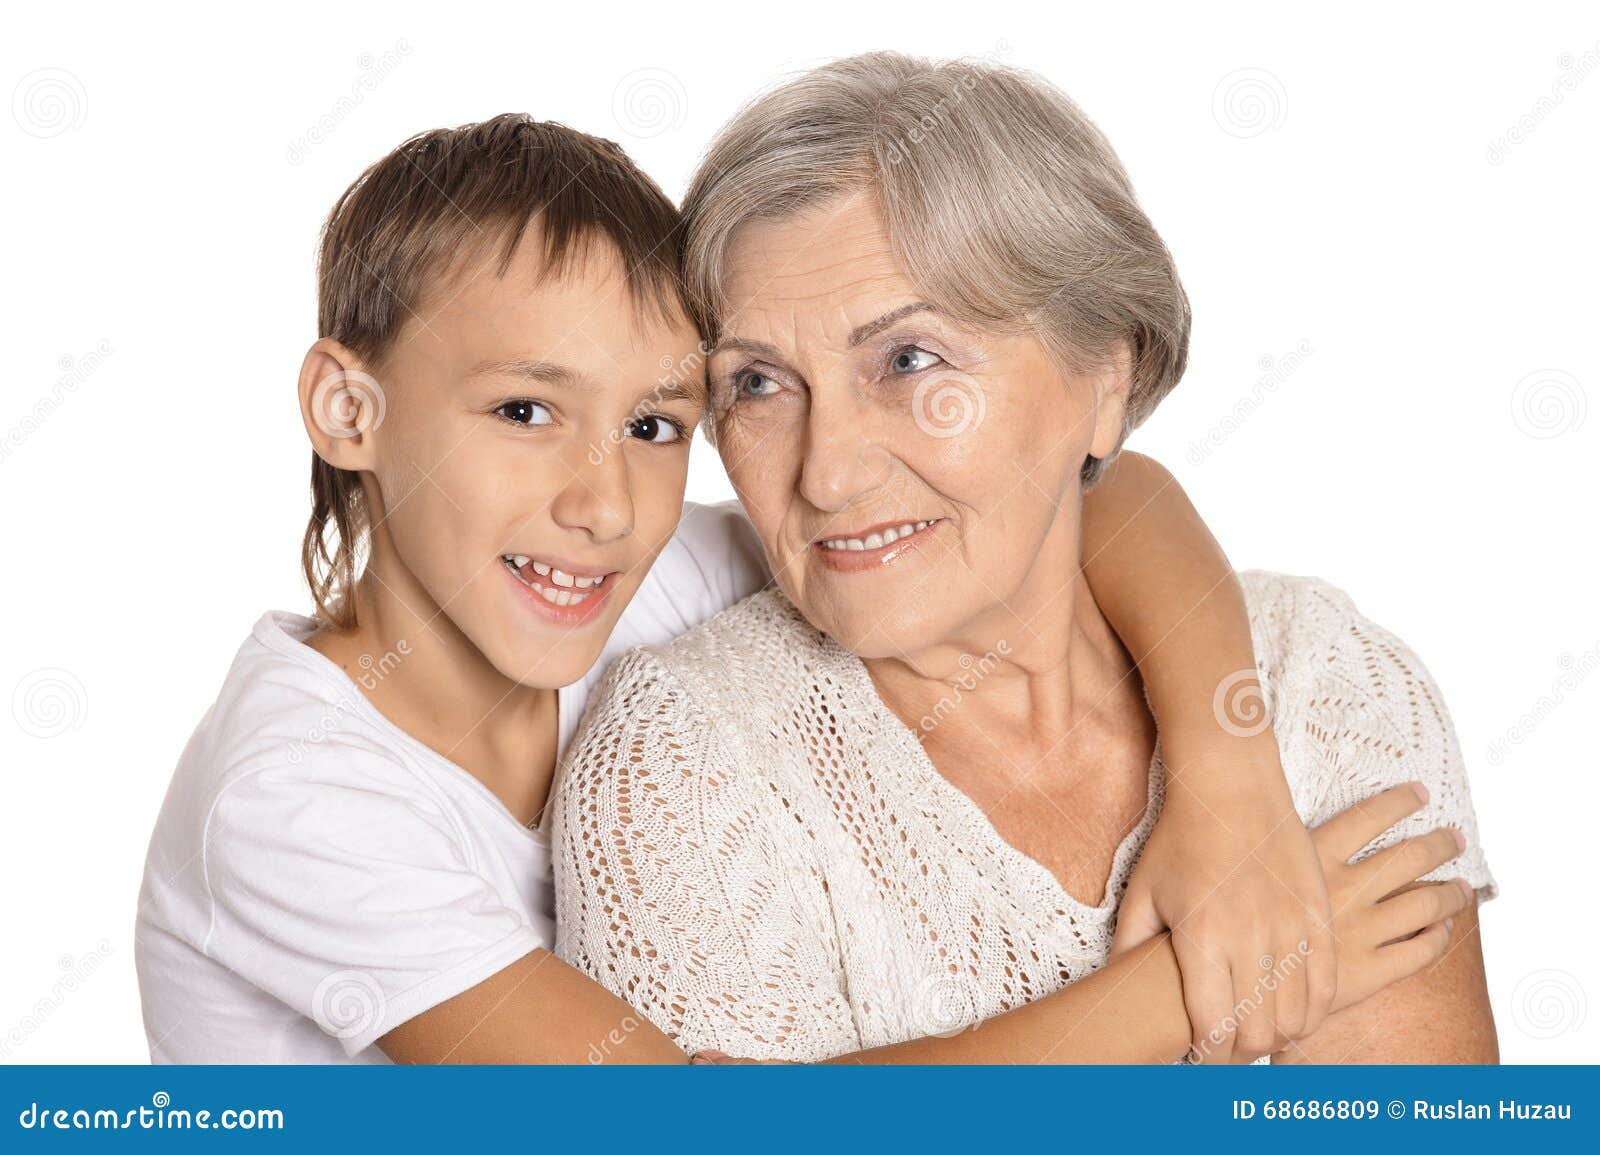 эротика бабушек и малолеток фото 119